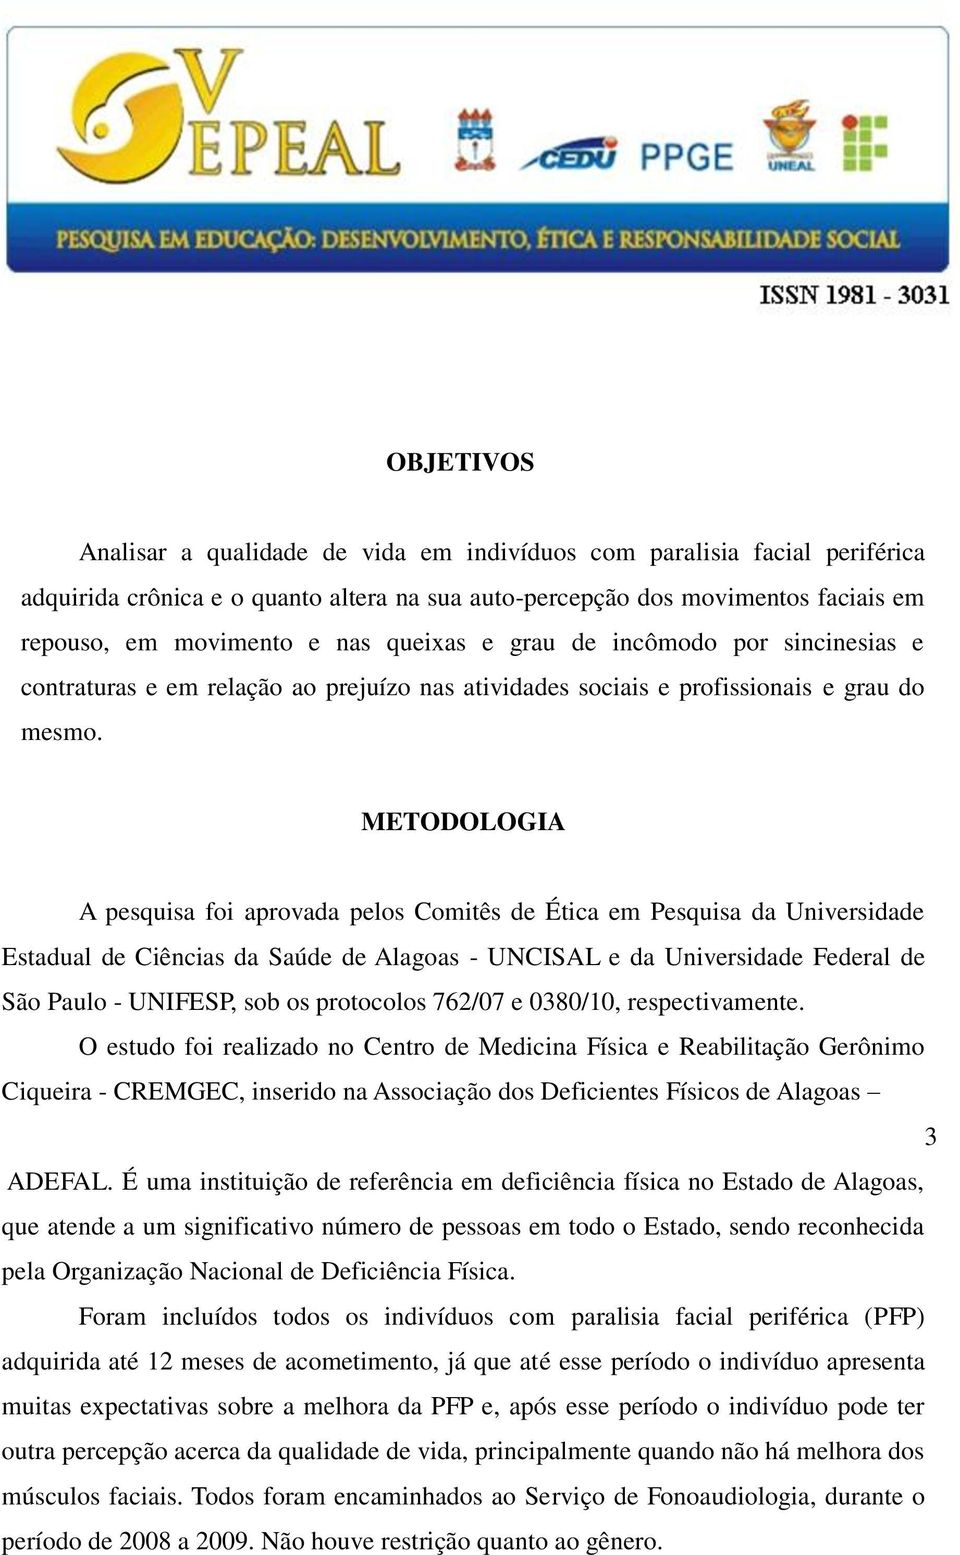 METODOLOGIA A pesquisa foi aprovada pelos Comitês de Ética em Pesquisa da Universidade Estadual de Ciências da Saúde de Alagoas - UNCISAL e da Universidade Federal de São Paulo - UNIFESP, sob os